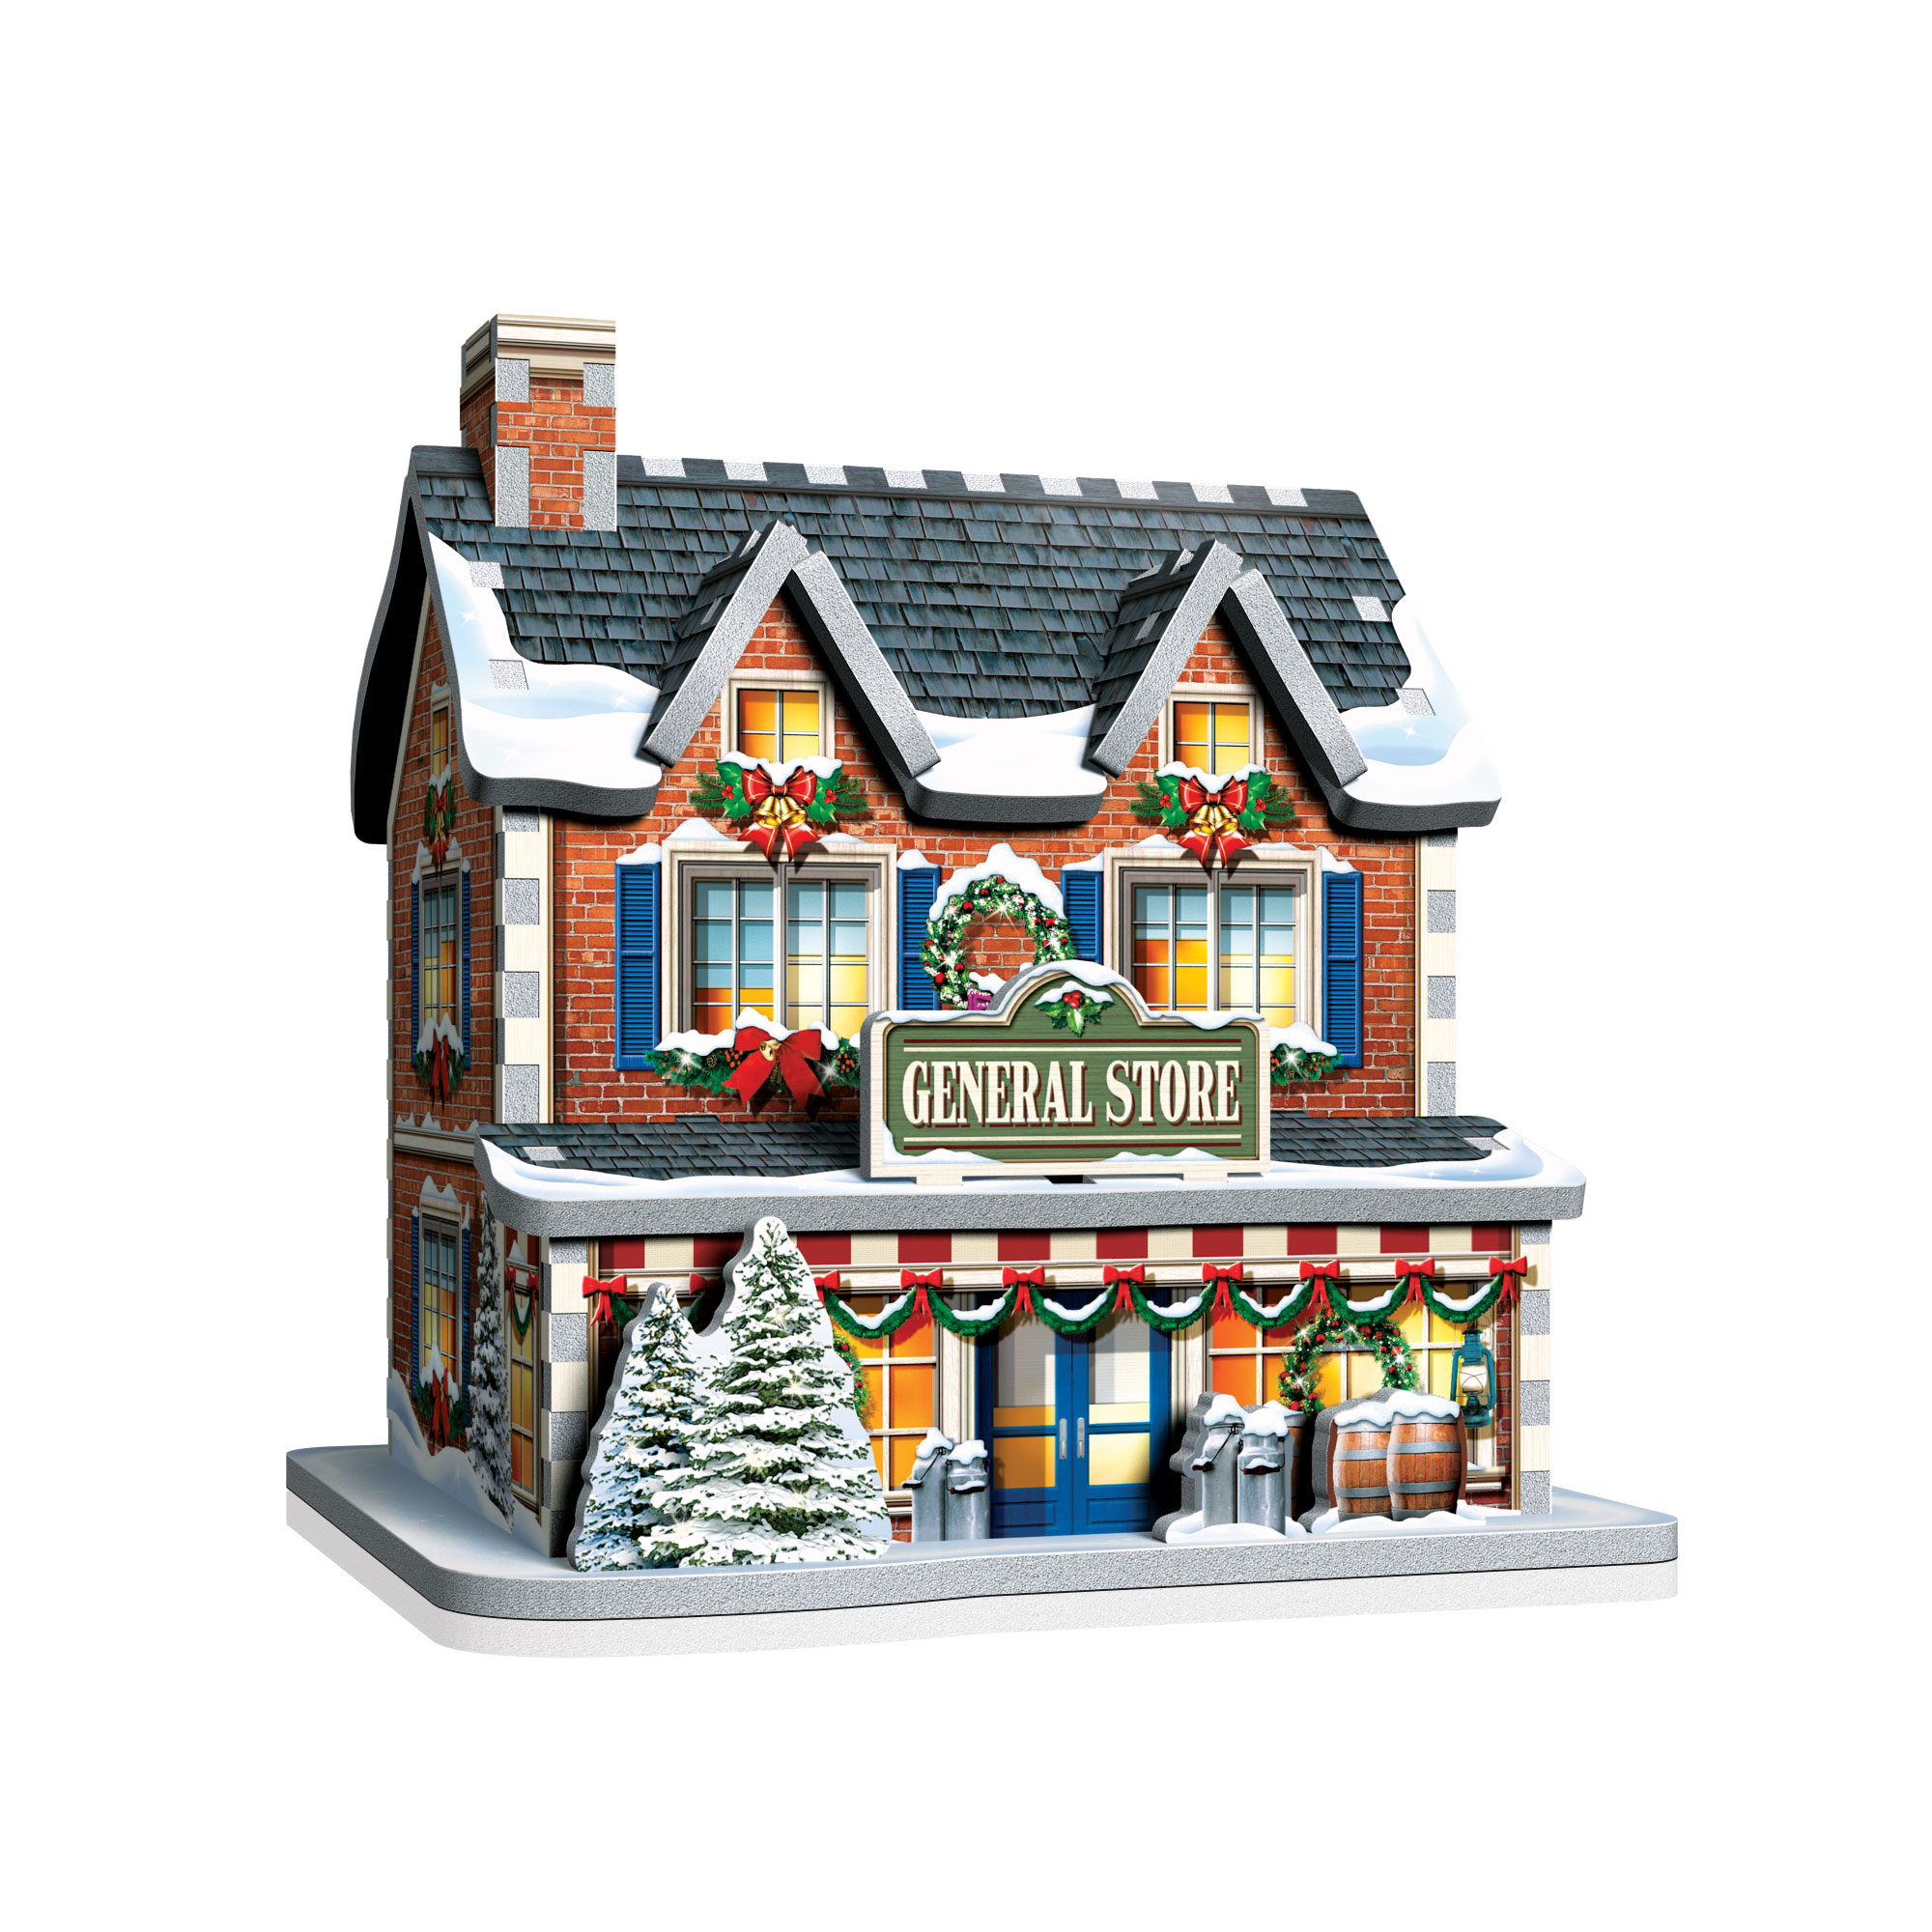 116 Large pieces Wrebbit 3D Puzzle Christmas Village Puzzle Collection 